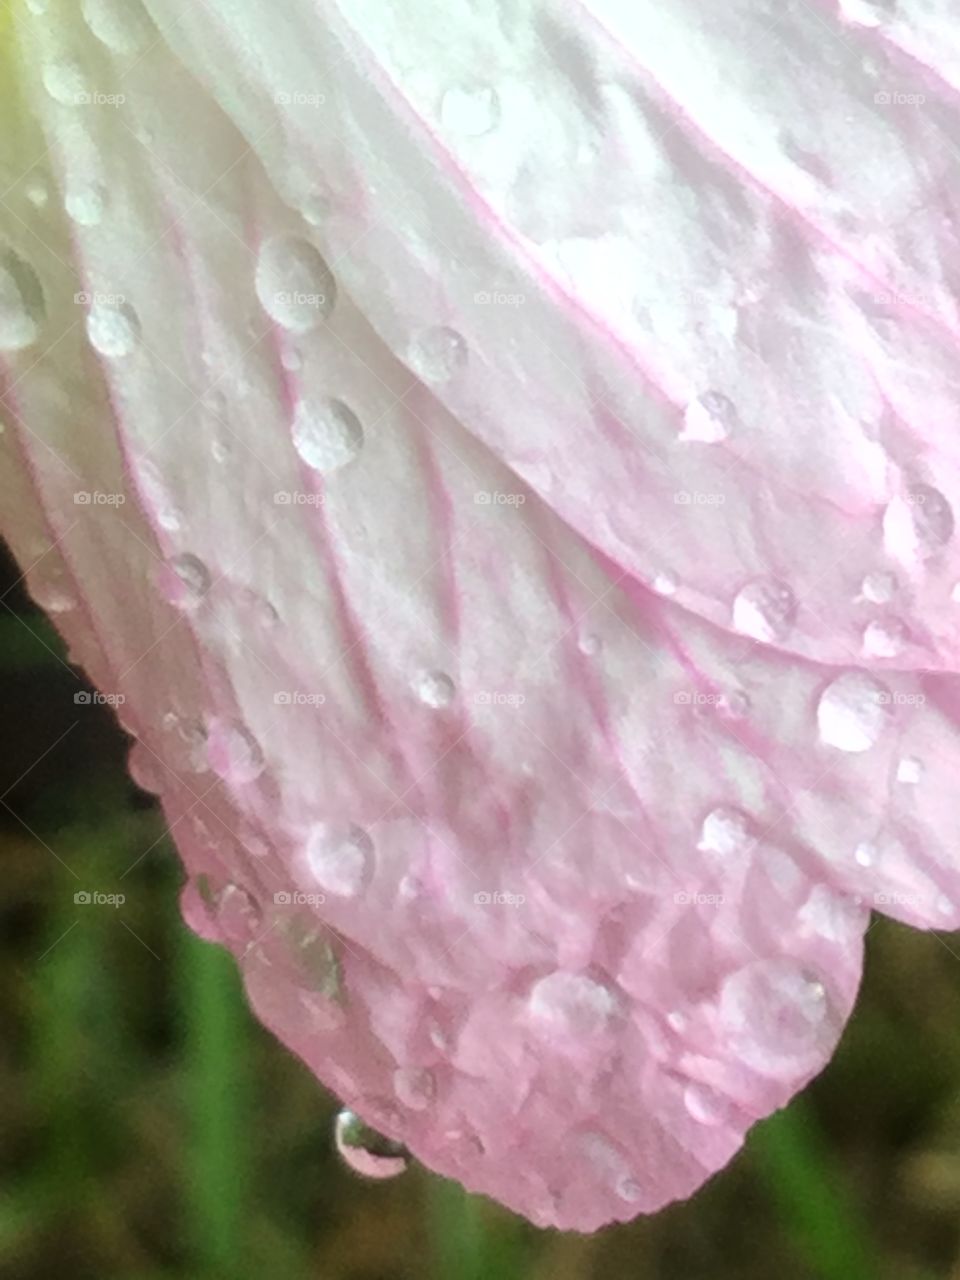 Raindrops on Flower1